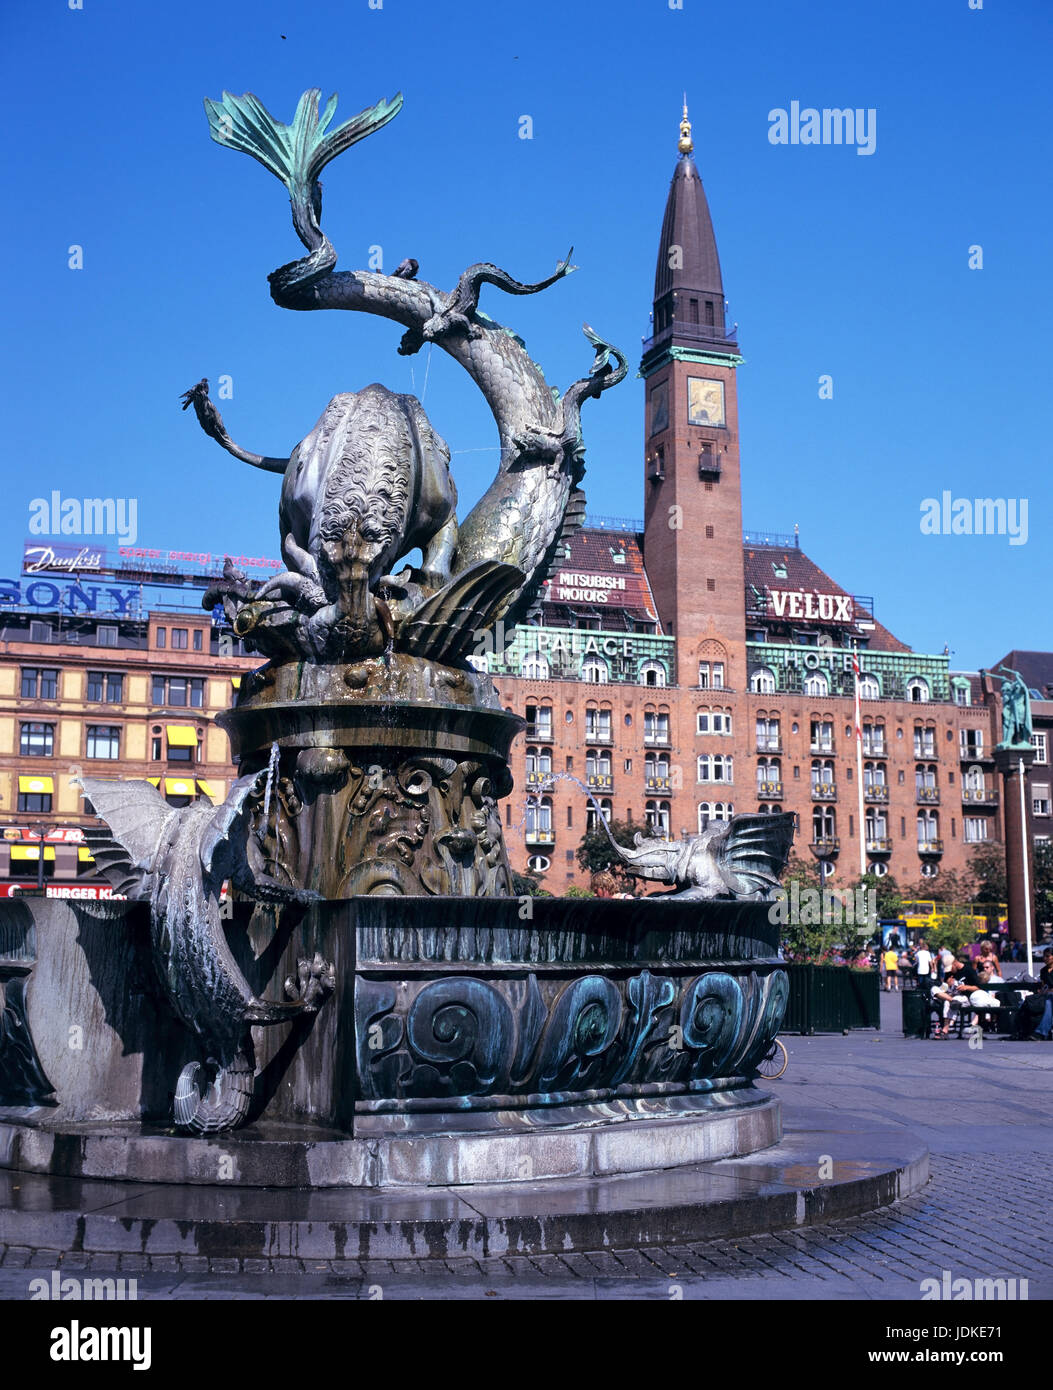 Danimarca, Copenaghen, alla piazza del municipio, Dragon's bene, Daenemark, Kopenhagen, Rathausplatz Drachenbrunnen Foto Stock